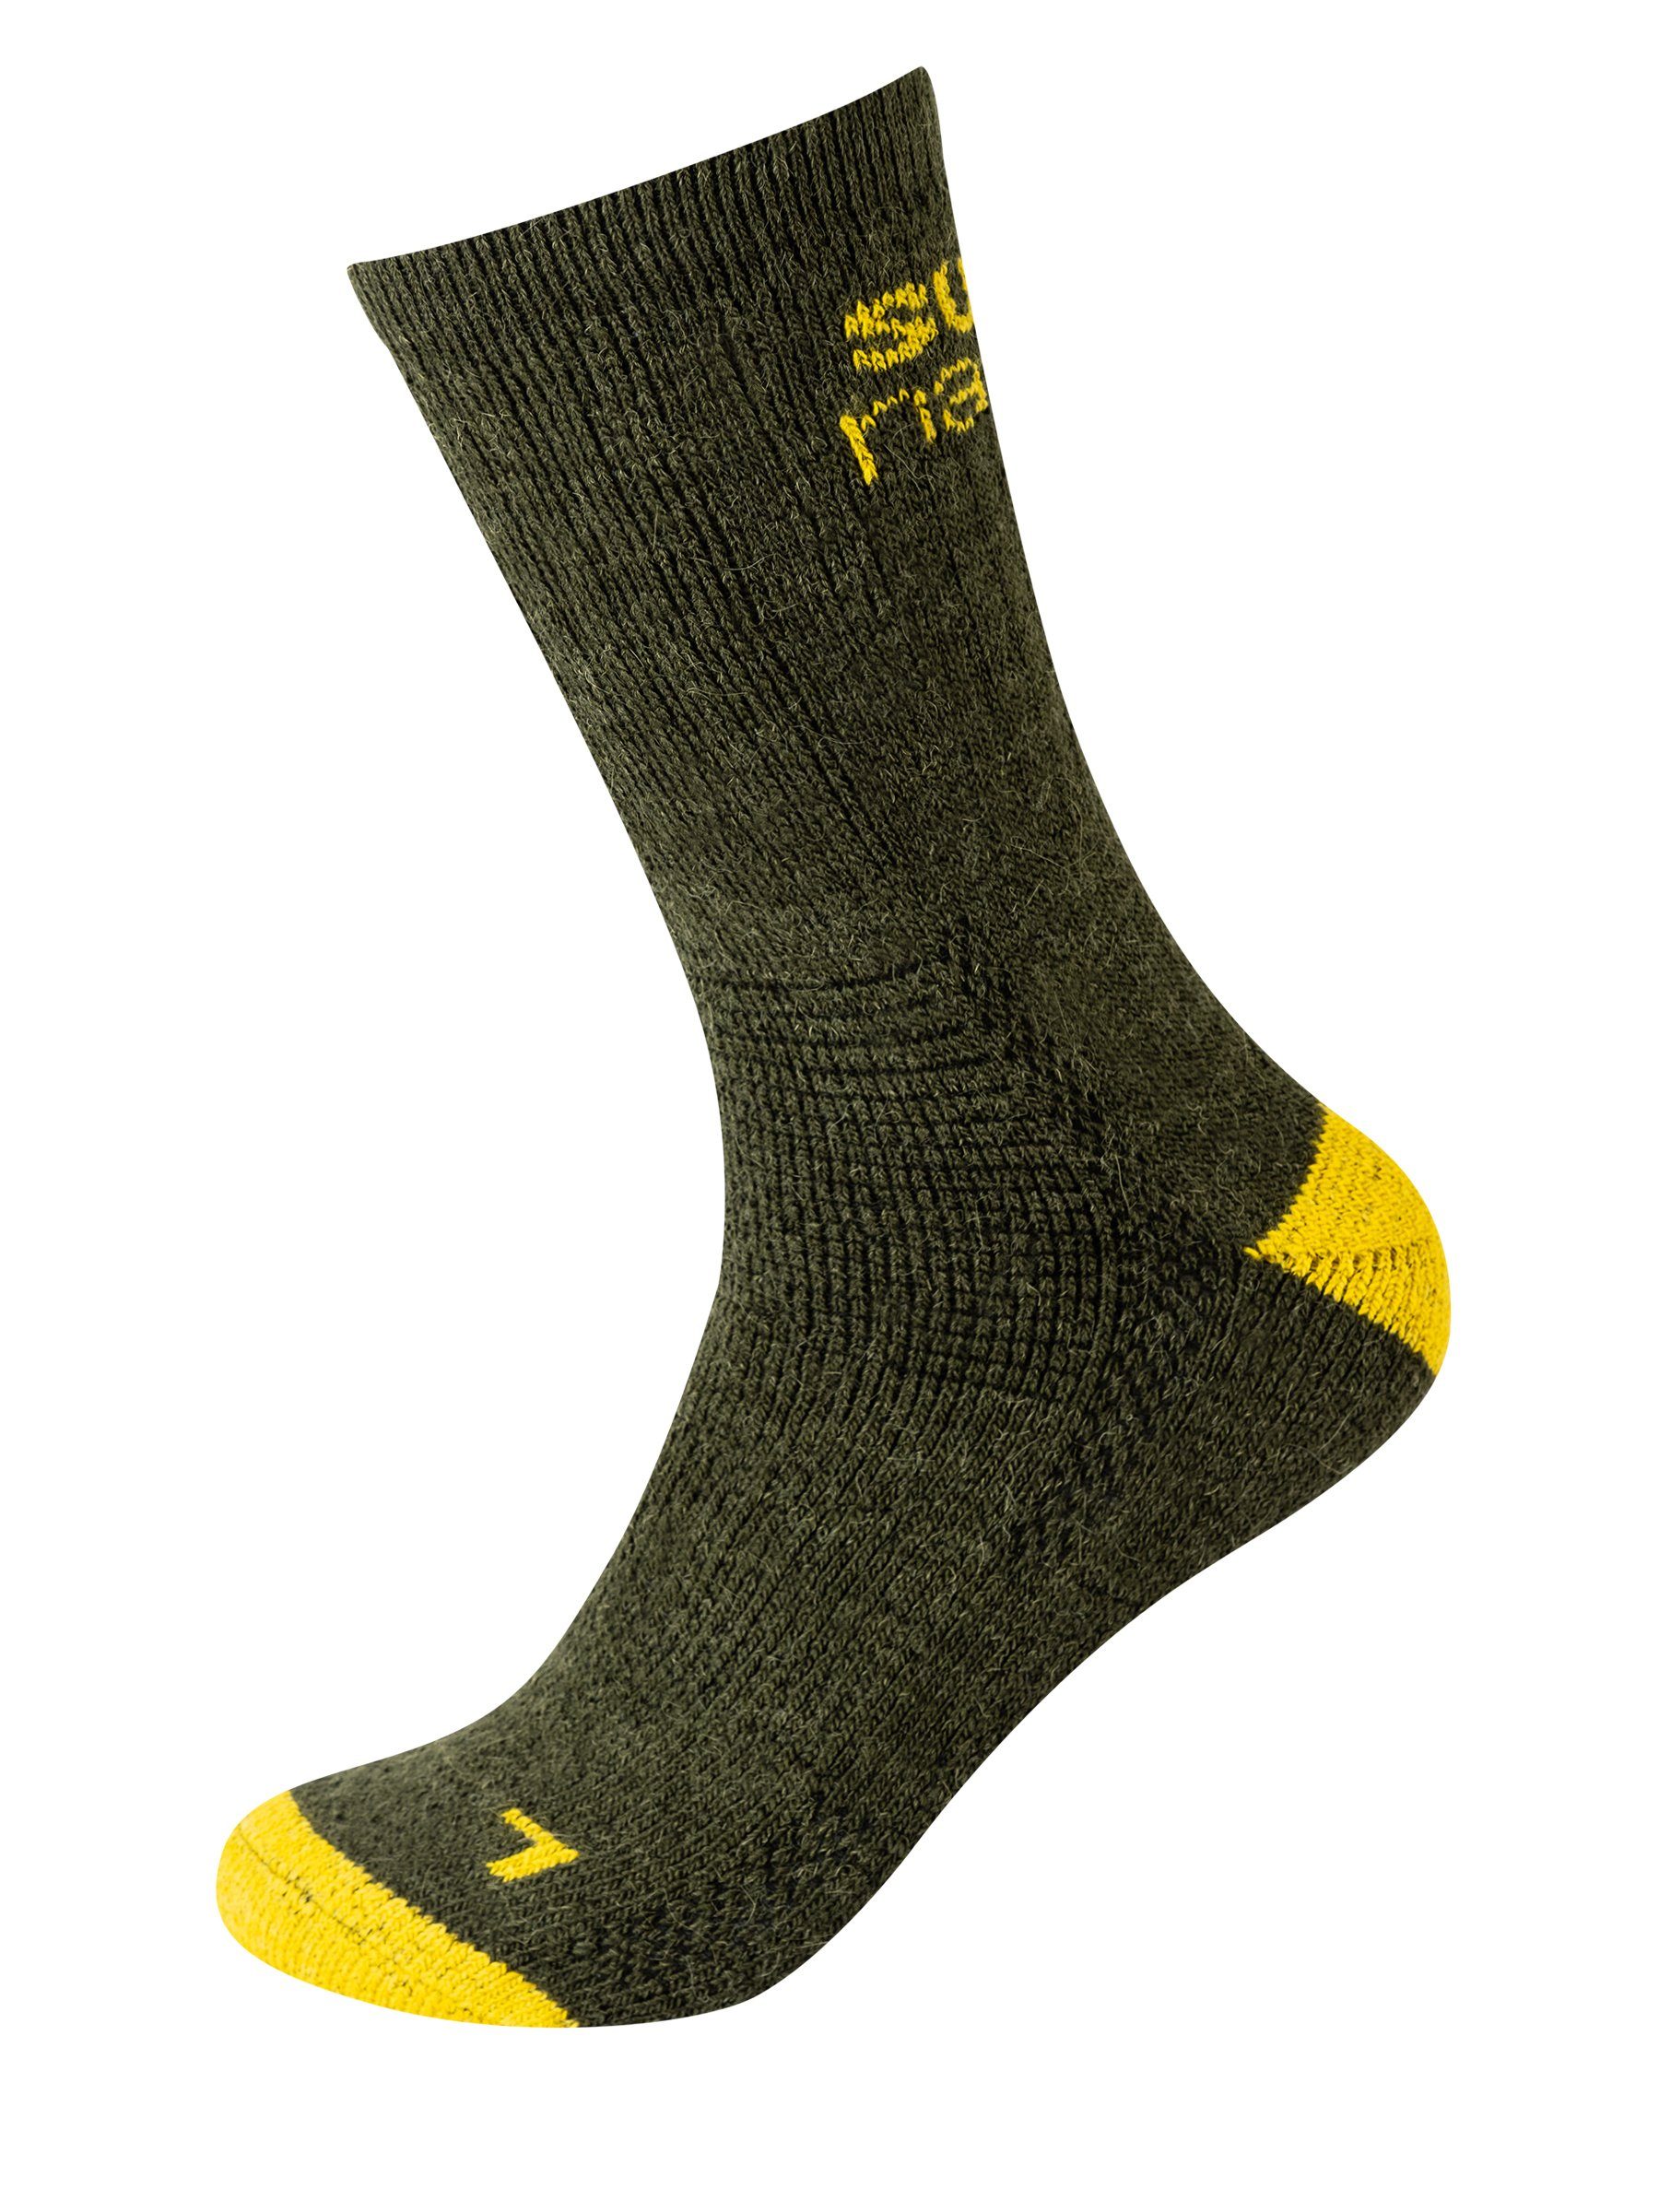 SUPER.NATURAL Sportsocken Alpaka Socken SN COSY SOCKS (2-Paar) No smell-no worries, Alpaka-Materialmix Olive Night/Tawny Mustard